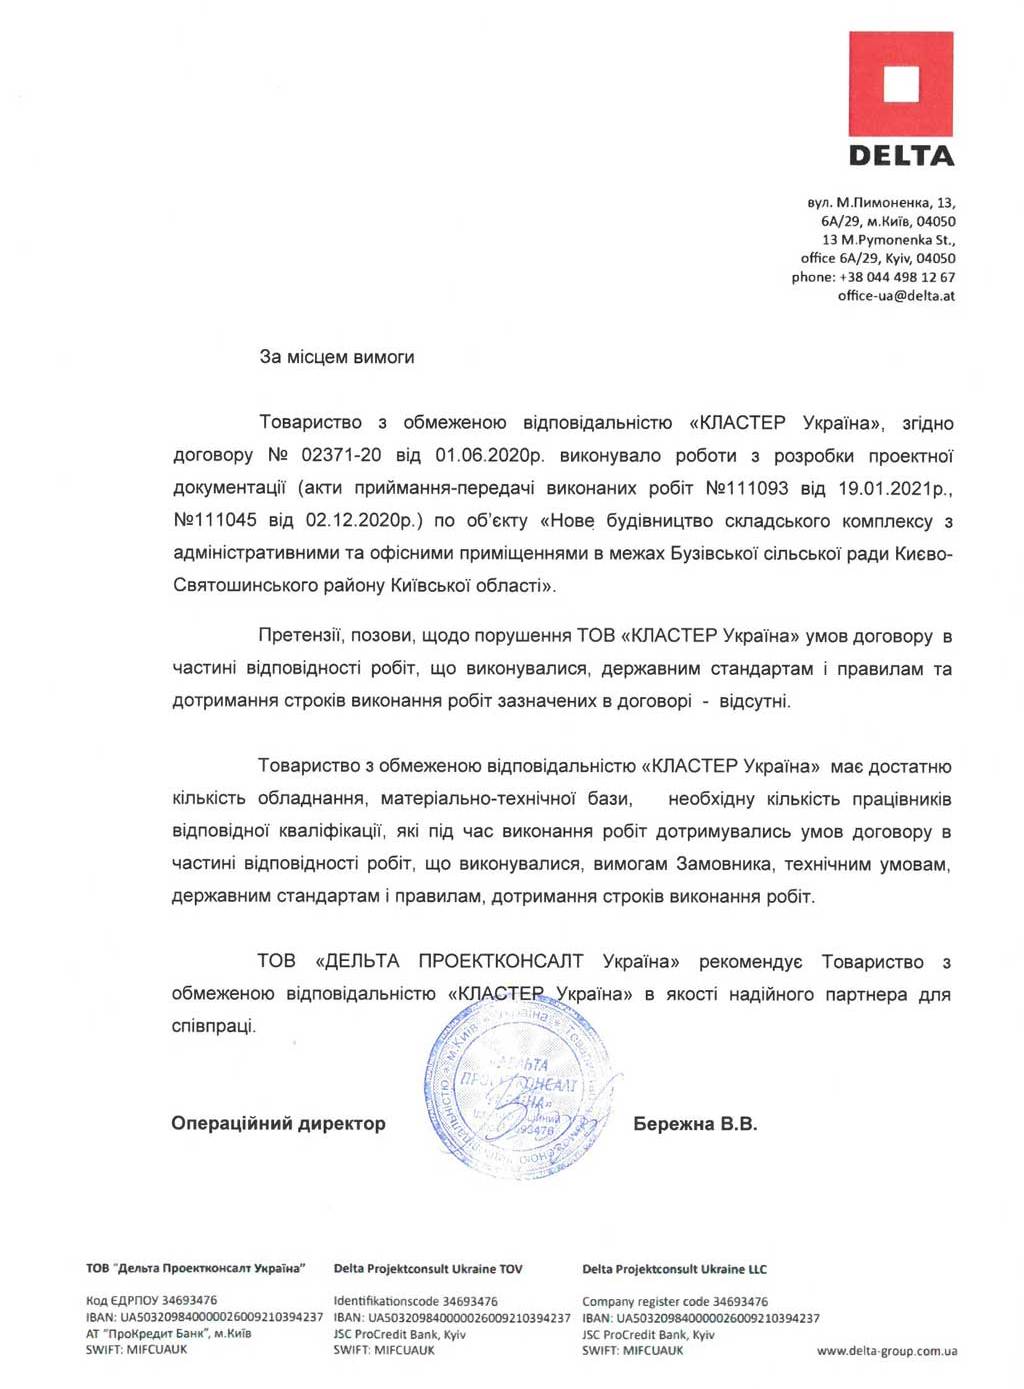 Рекомендаційний лист від ТОВ «ДЕЛЬТА Проектконсалт Україна»